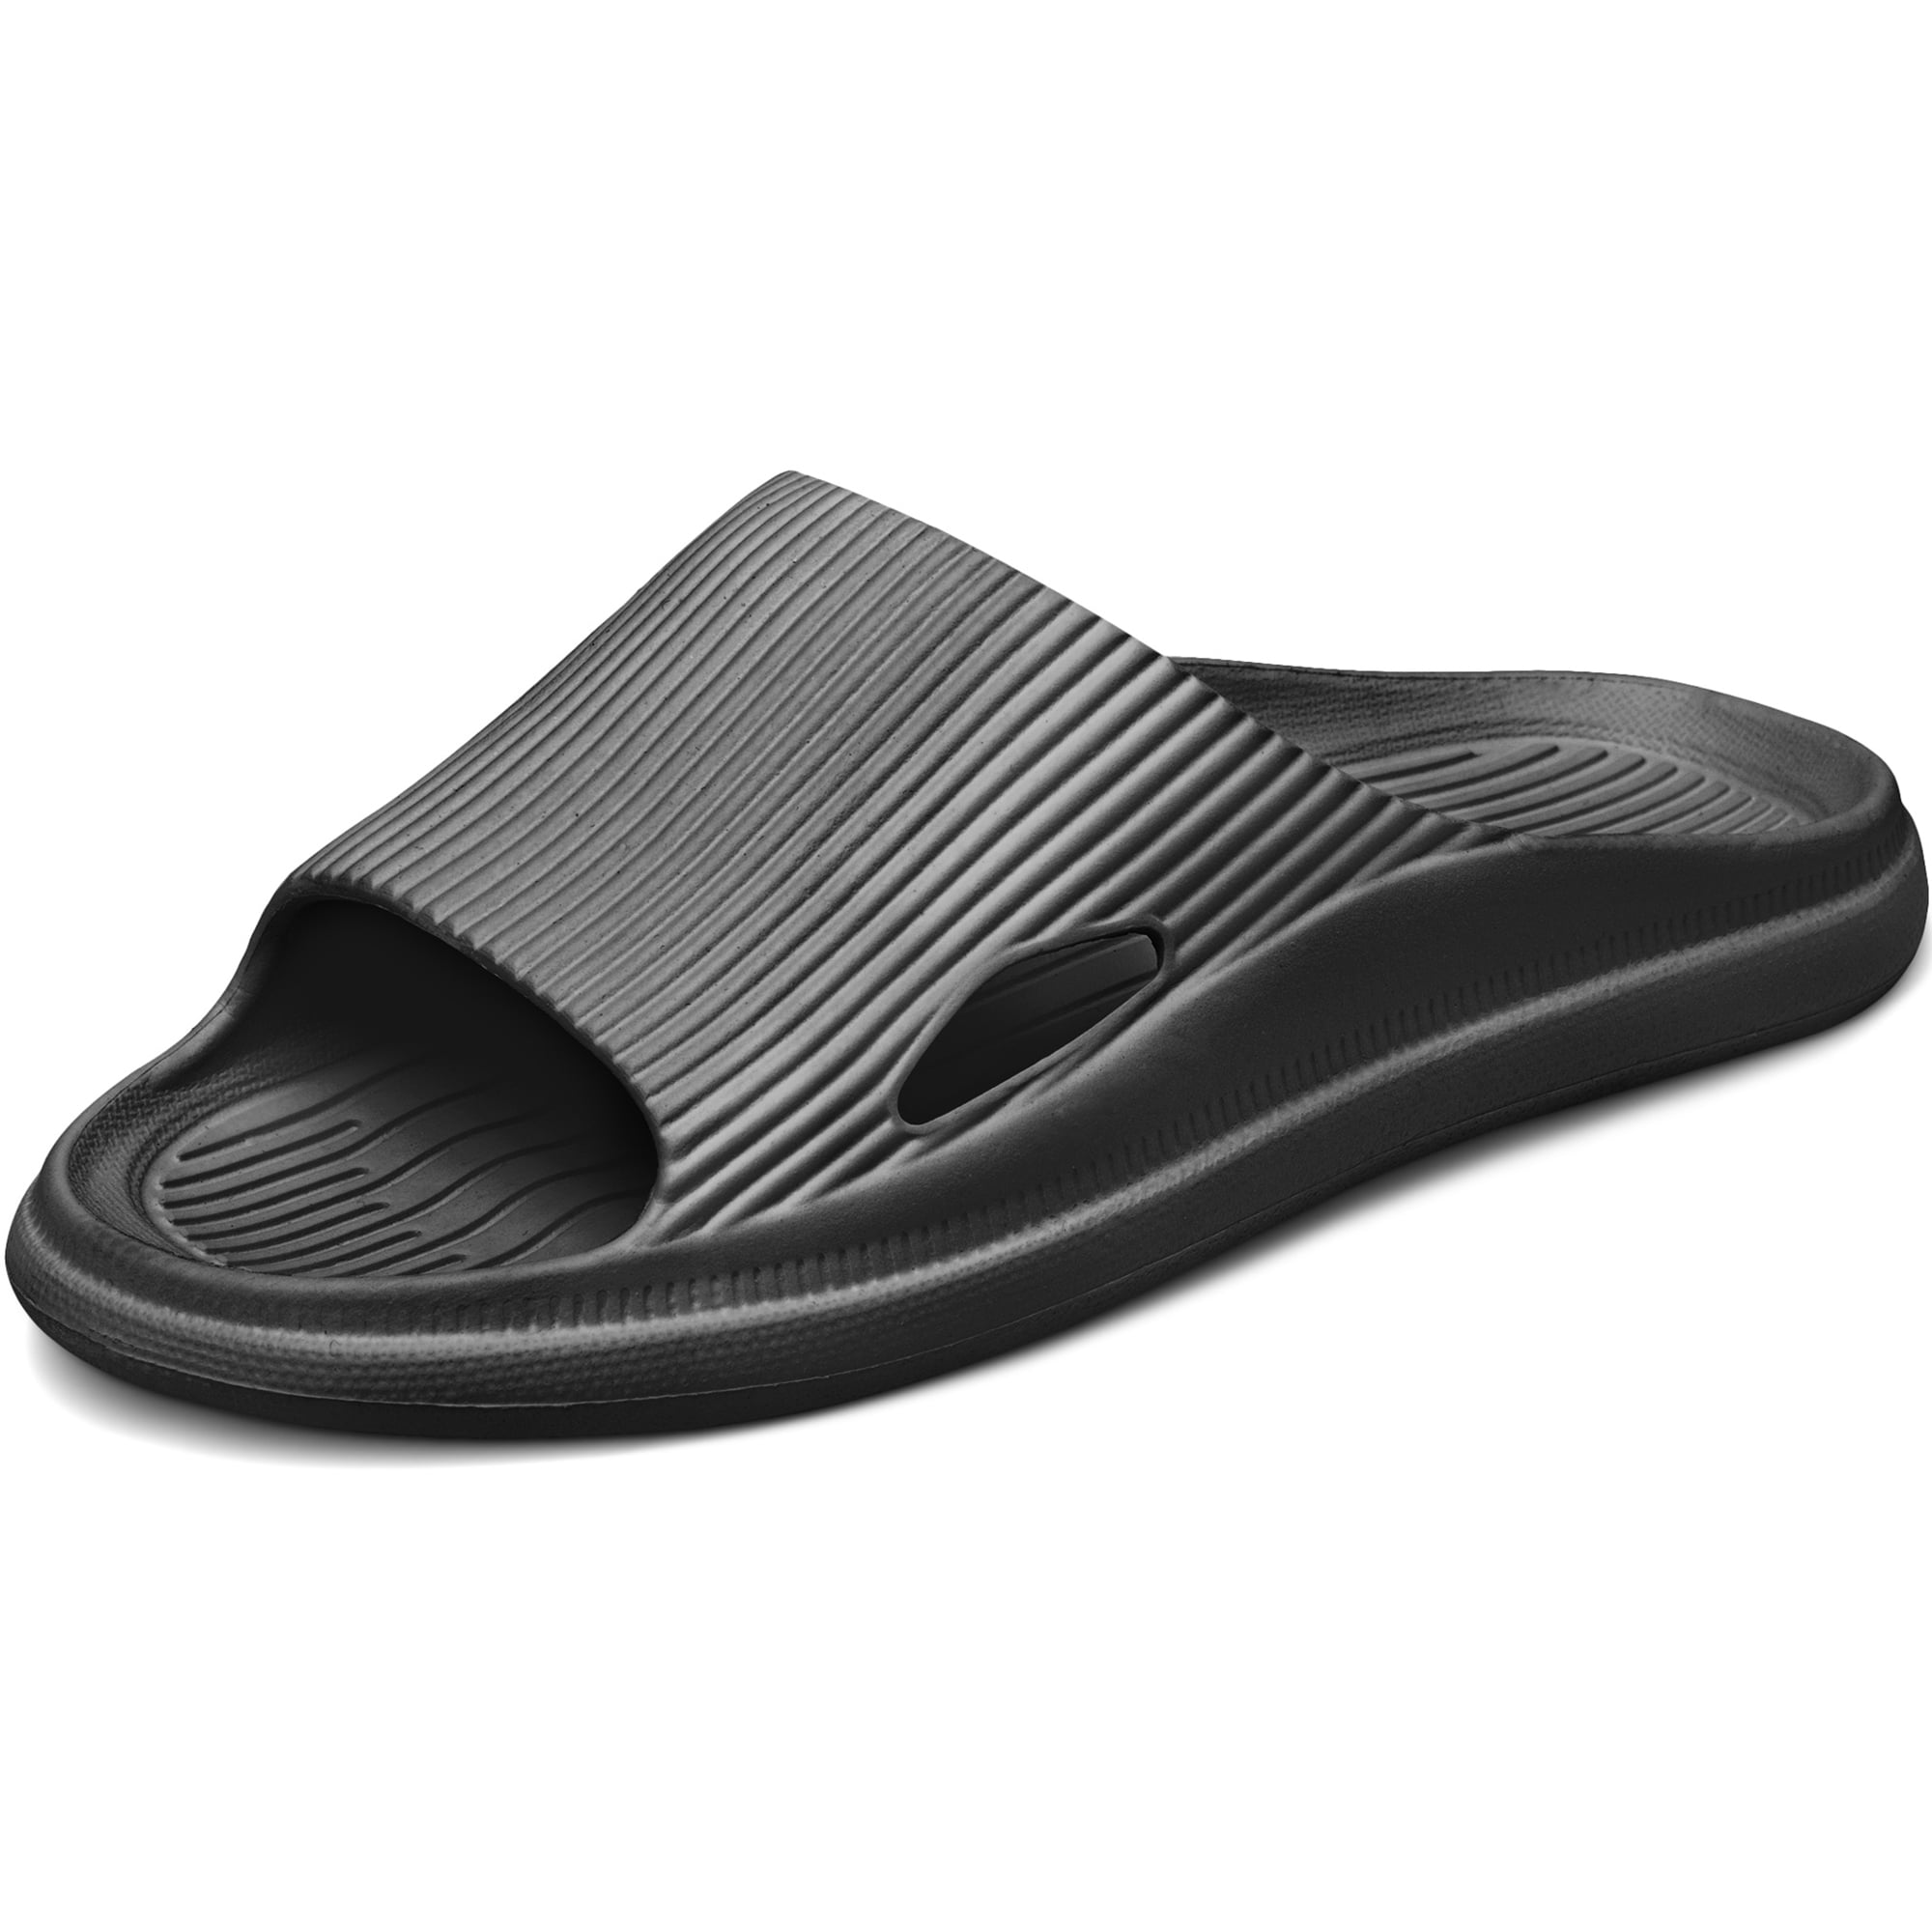 Bathroom Shower Shoes for Women Men EVA Foam Sandals Non-Slip Slides by ...